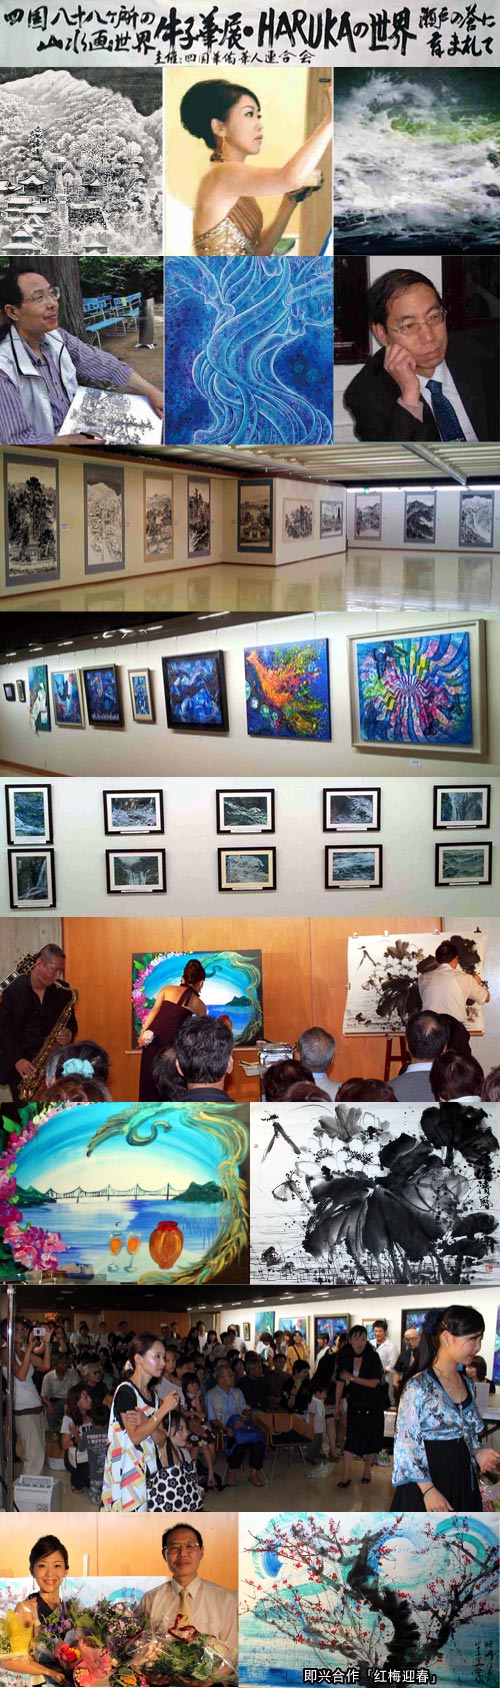 本连合会主办中日画家交流展览会照片